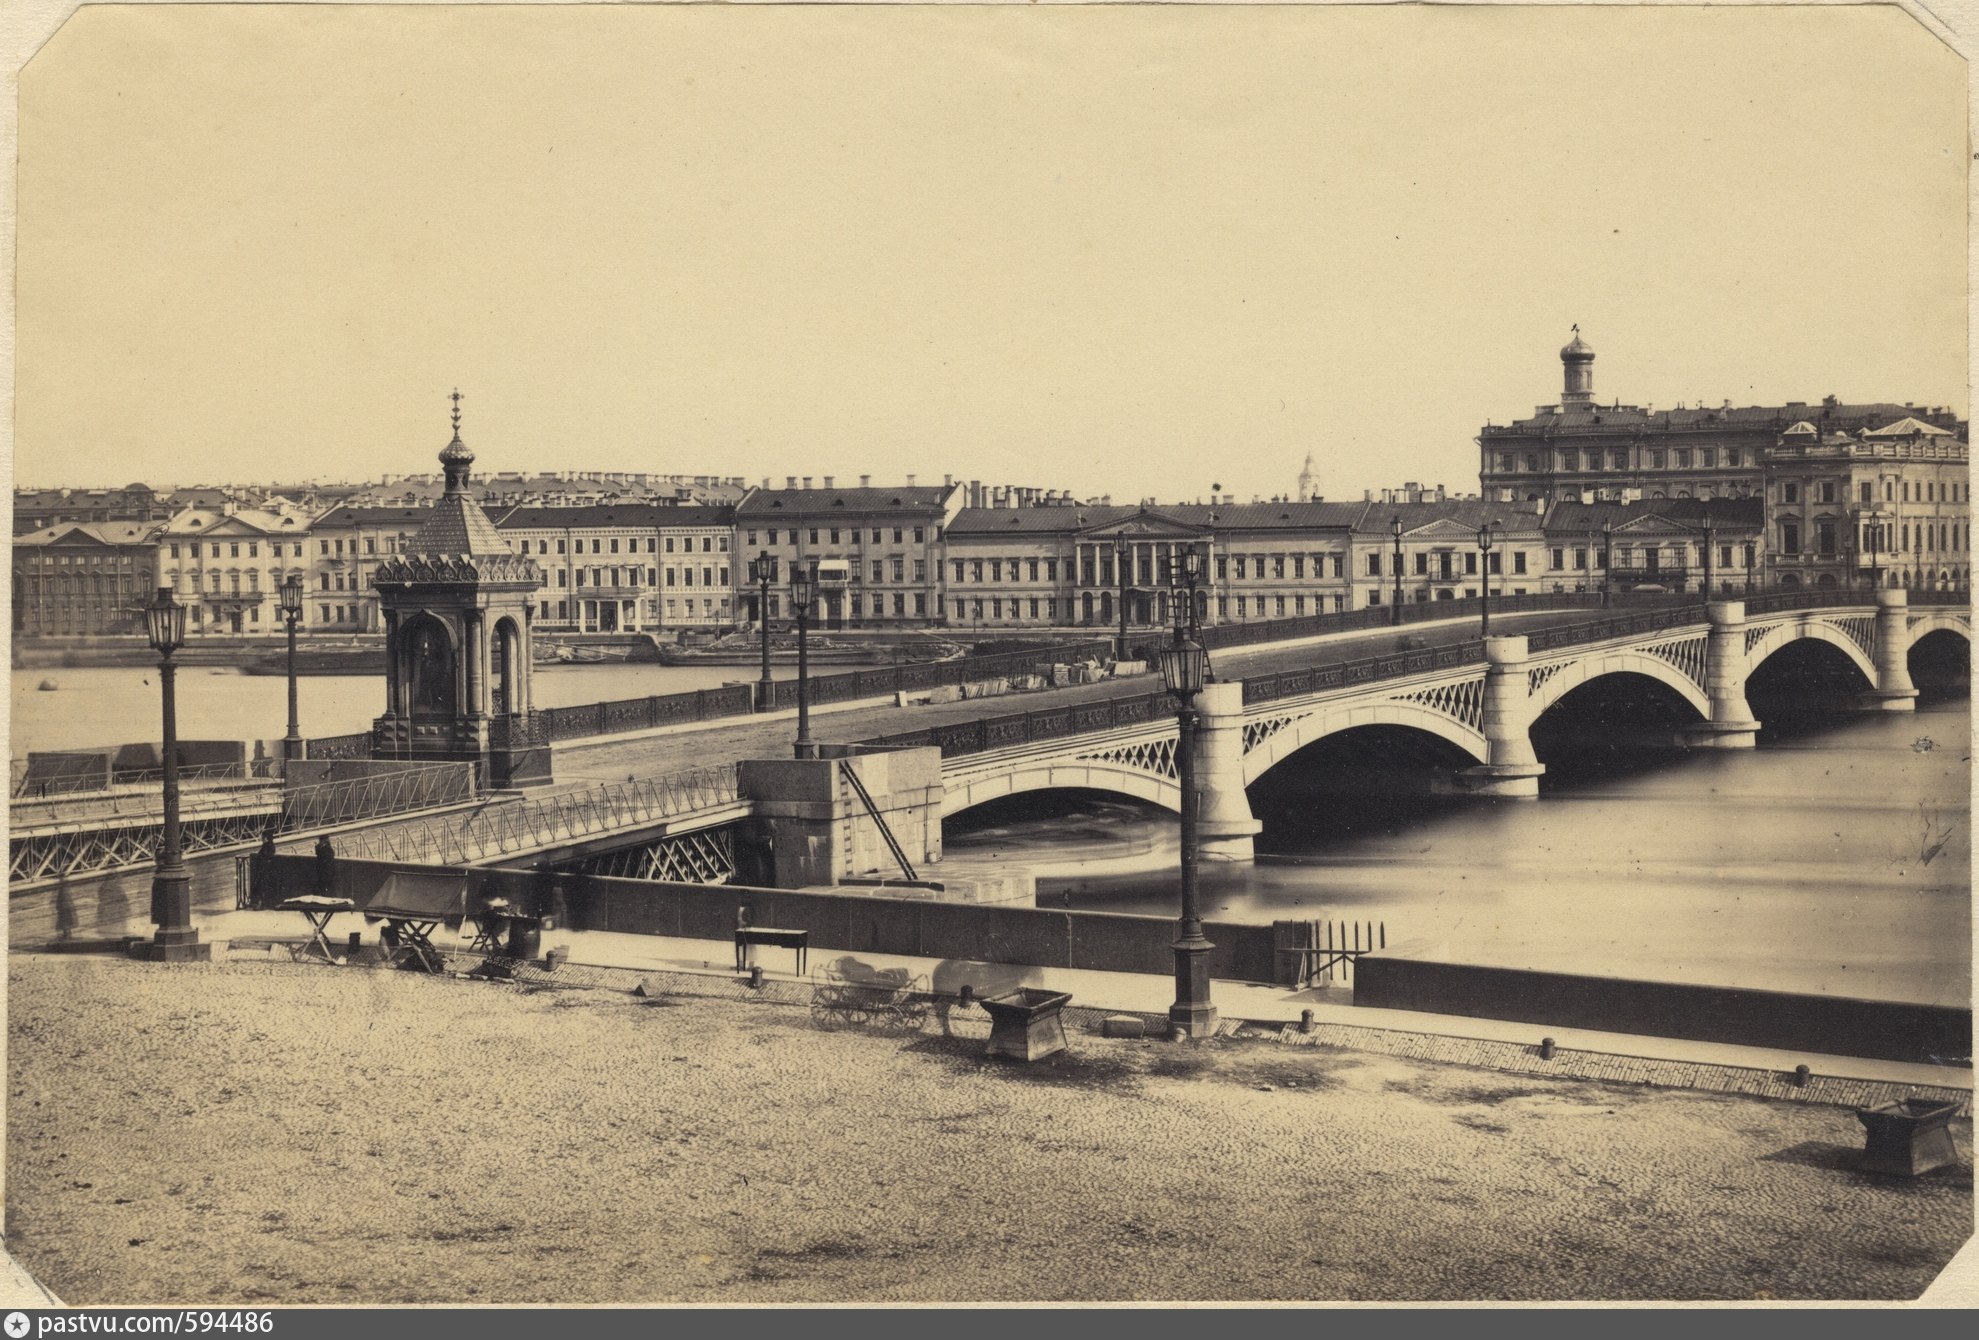 мосты в 19 веке